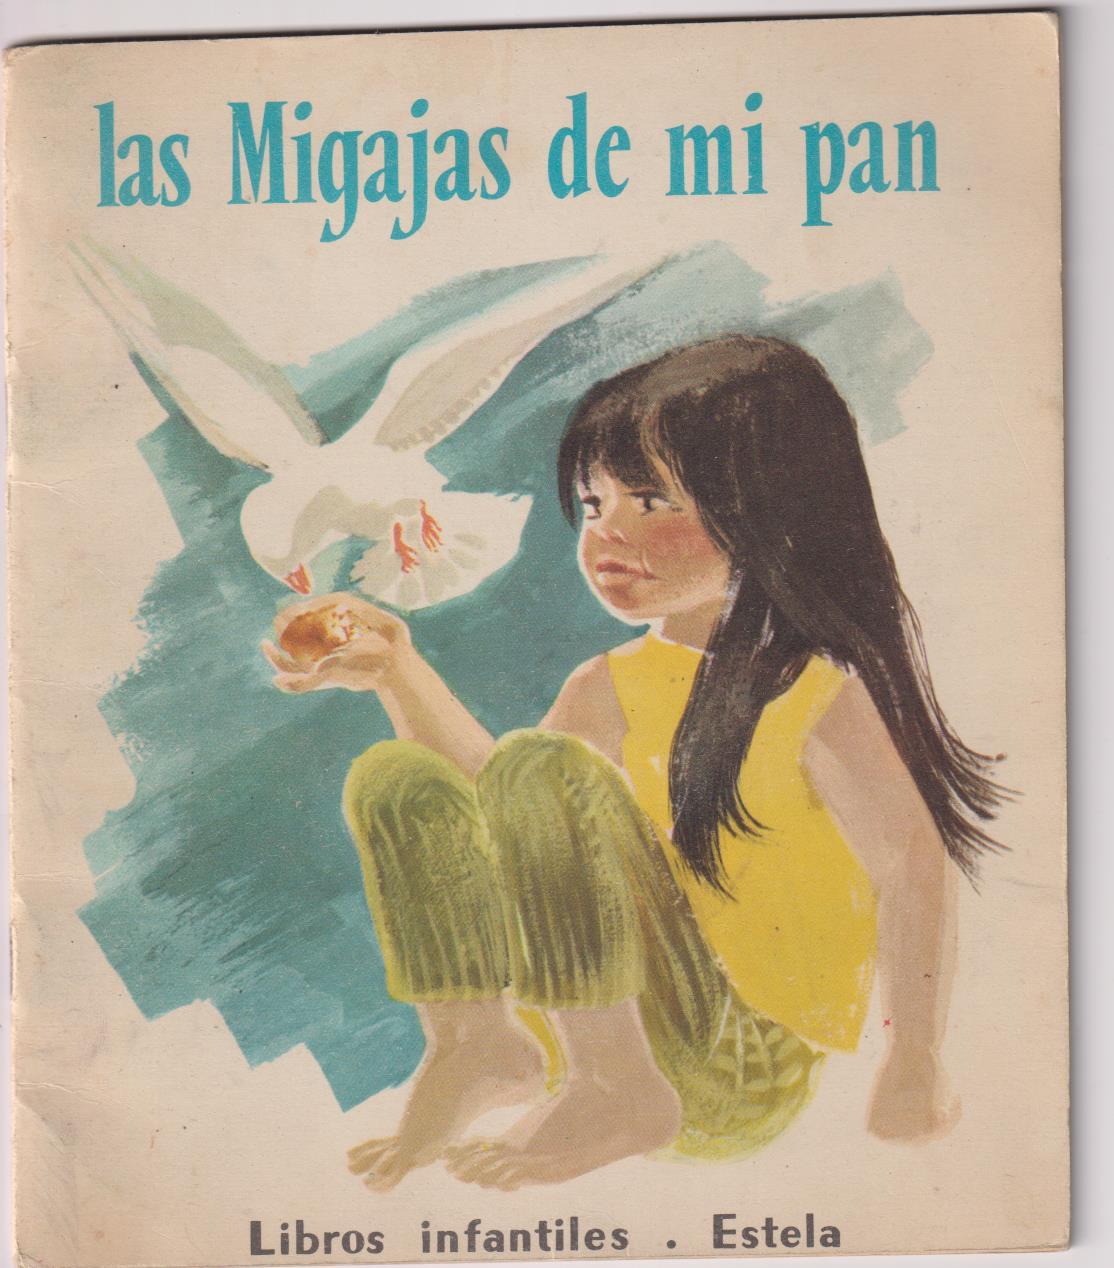 Las Migajas de mi pan. Libros Infantiles Estela (21x18) 16 páginas. 1965